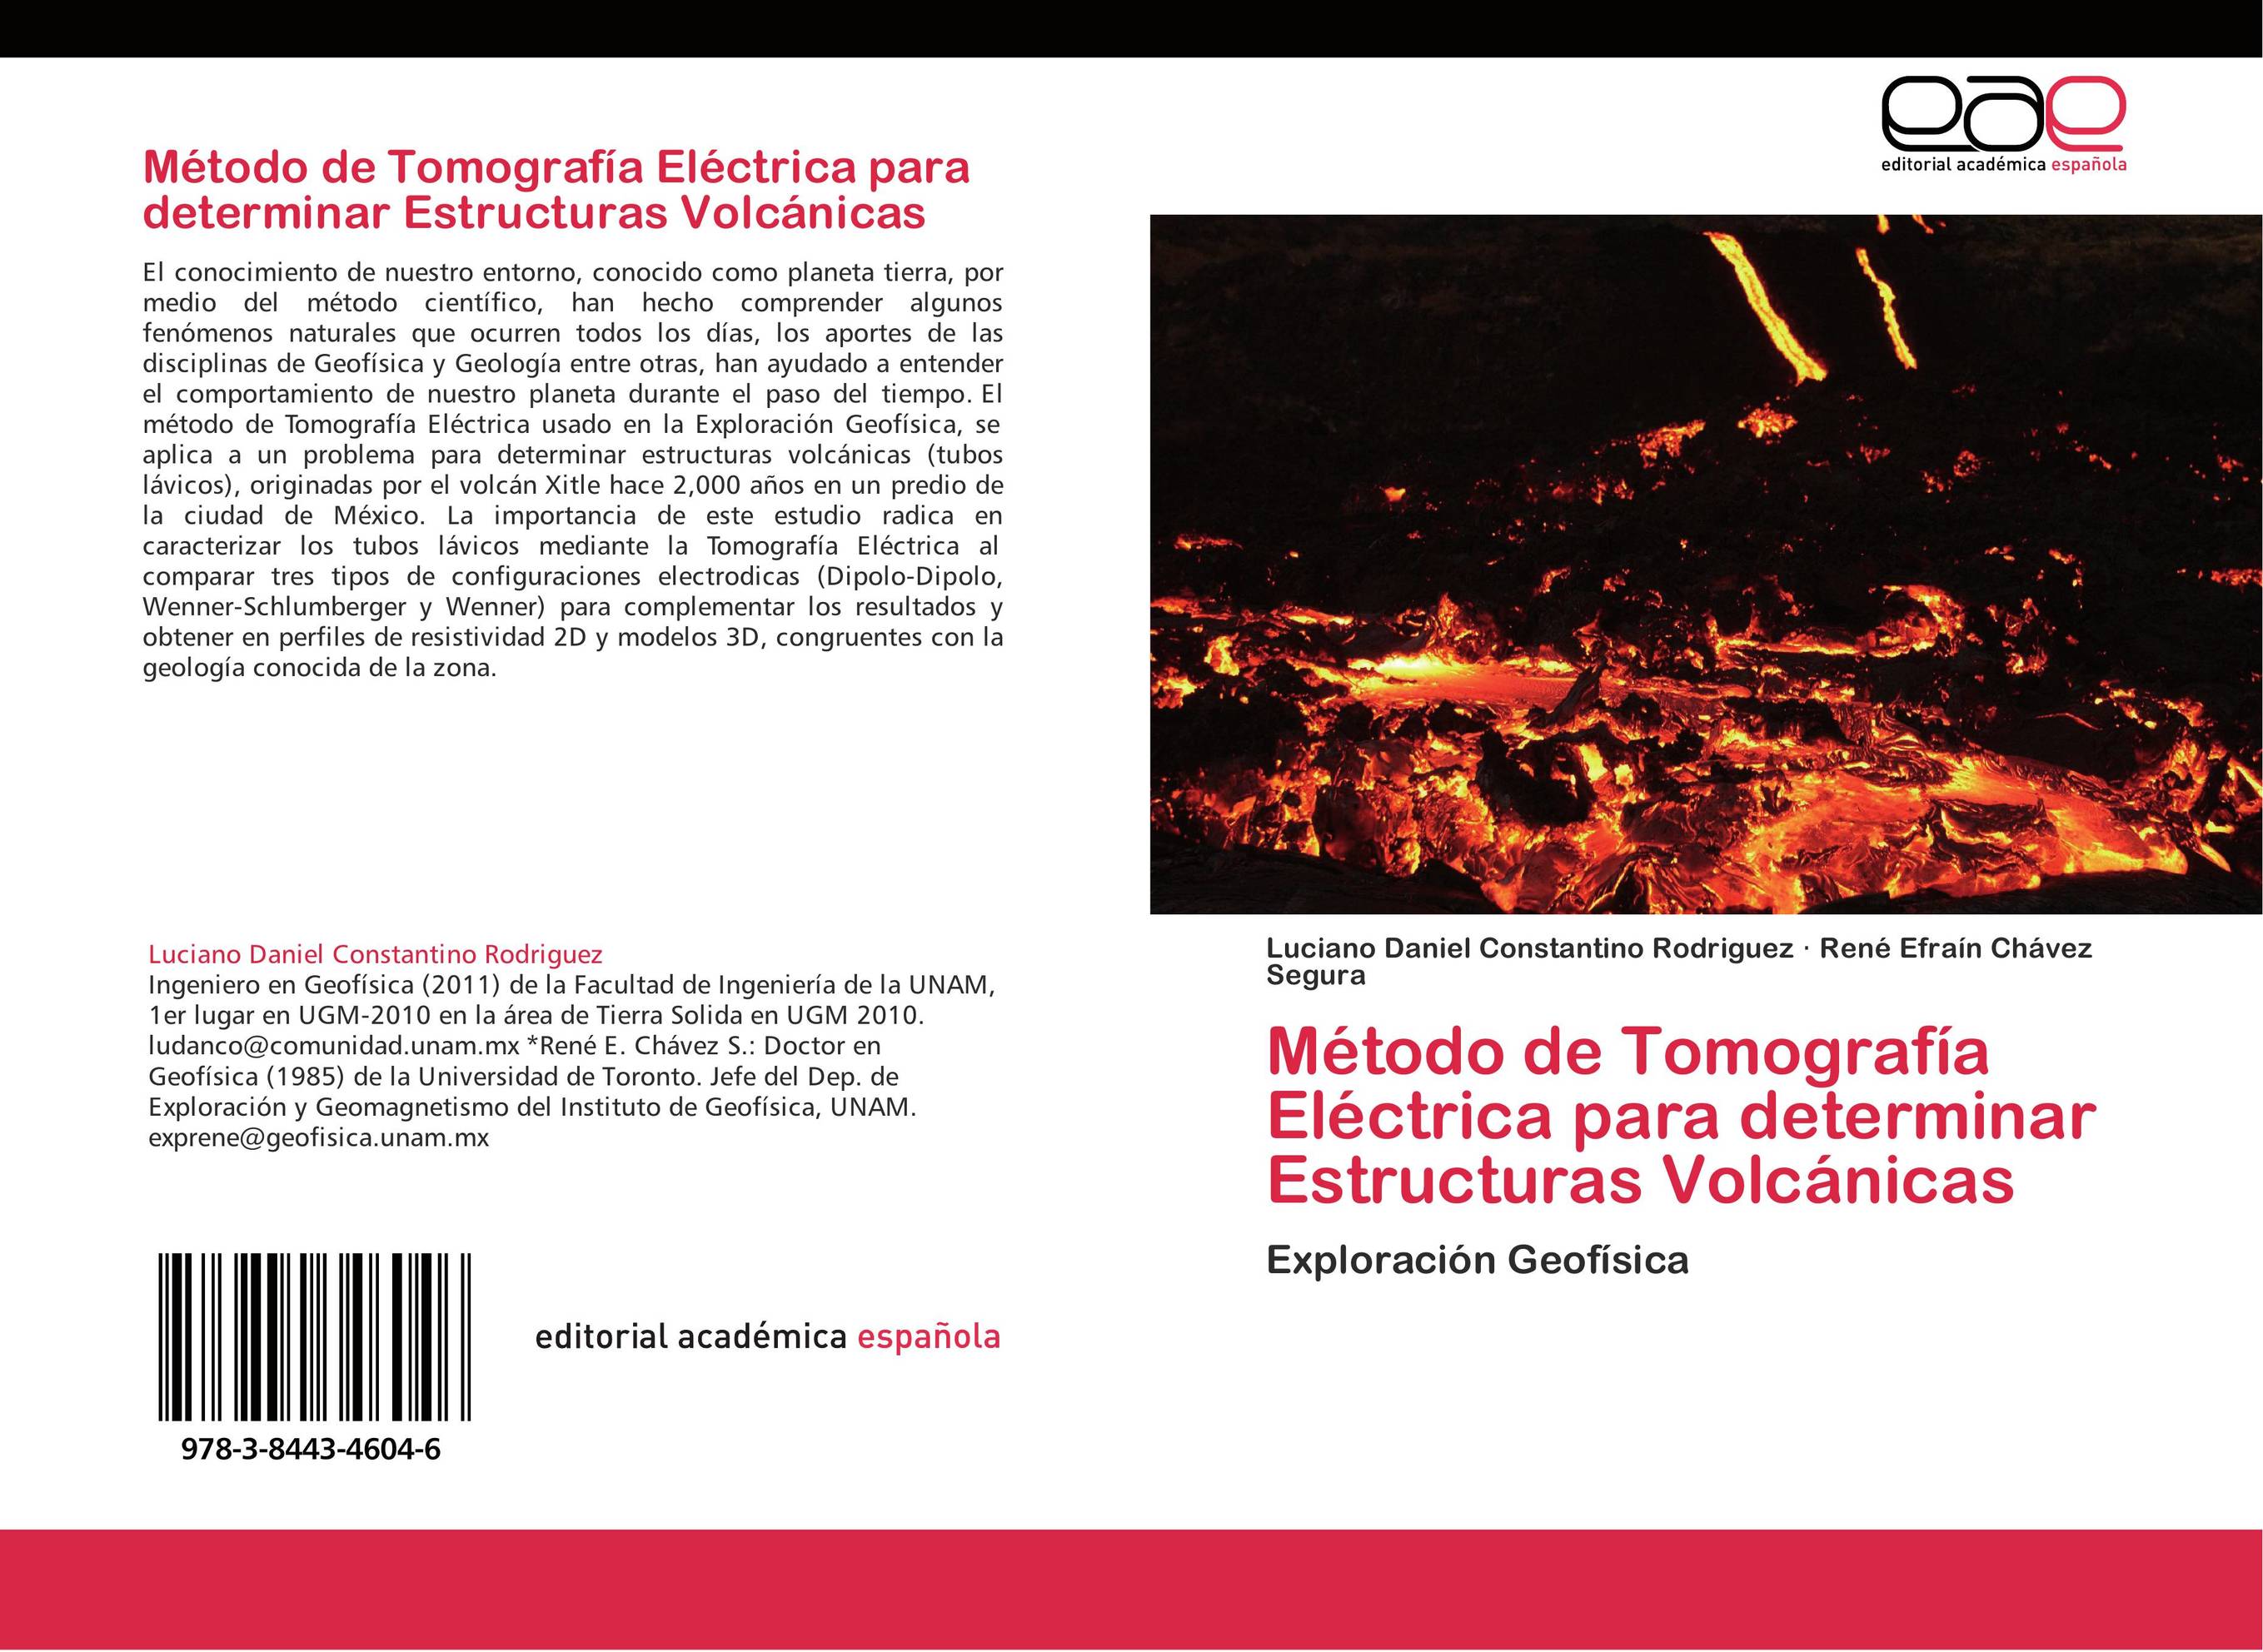 Método de Tomografía Eléctrica para determinar Estructuras Volcánicas